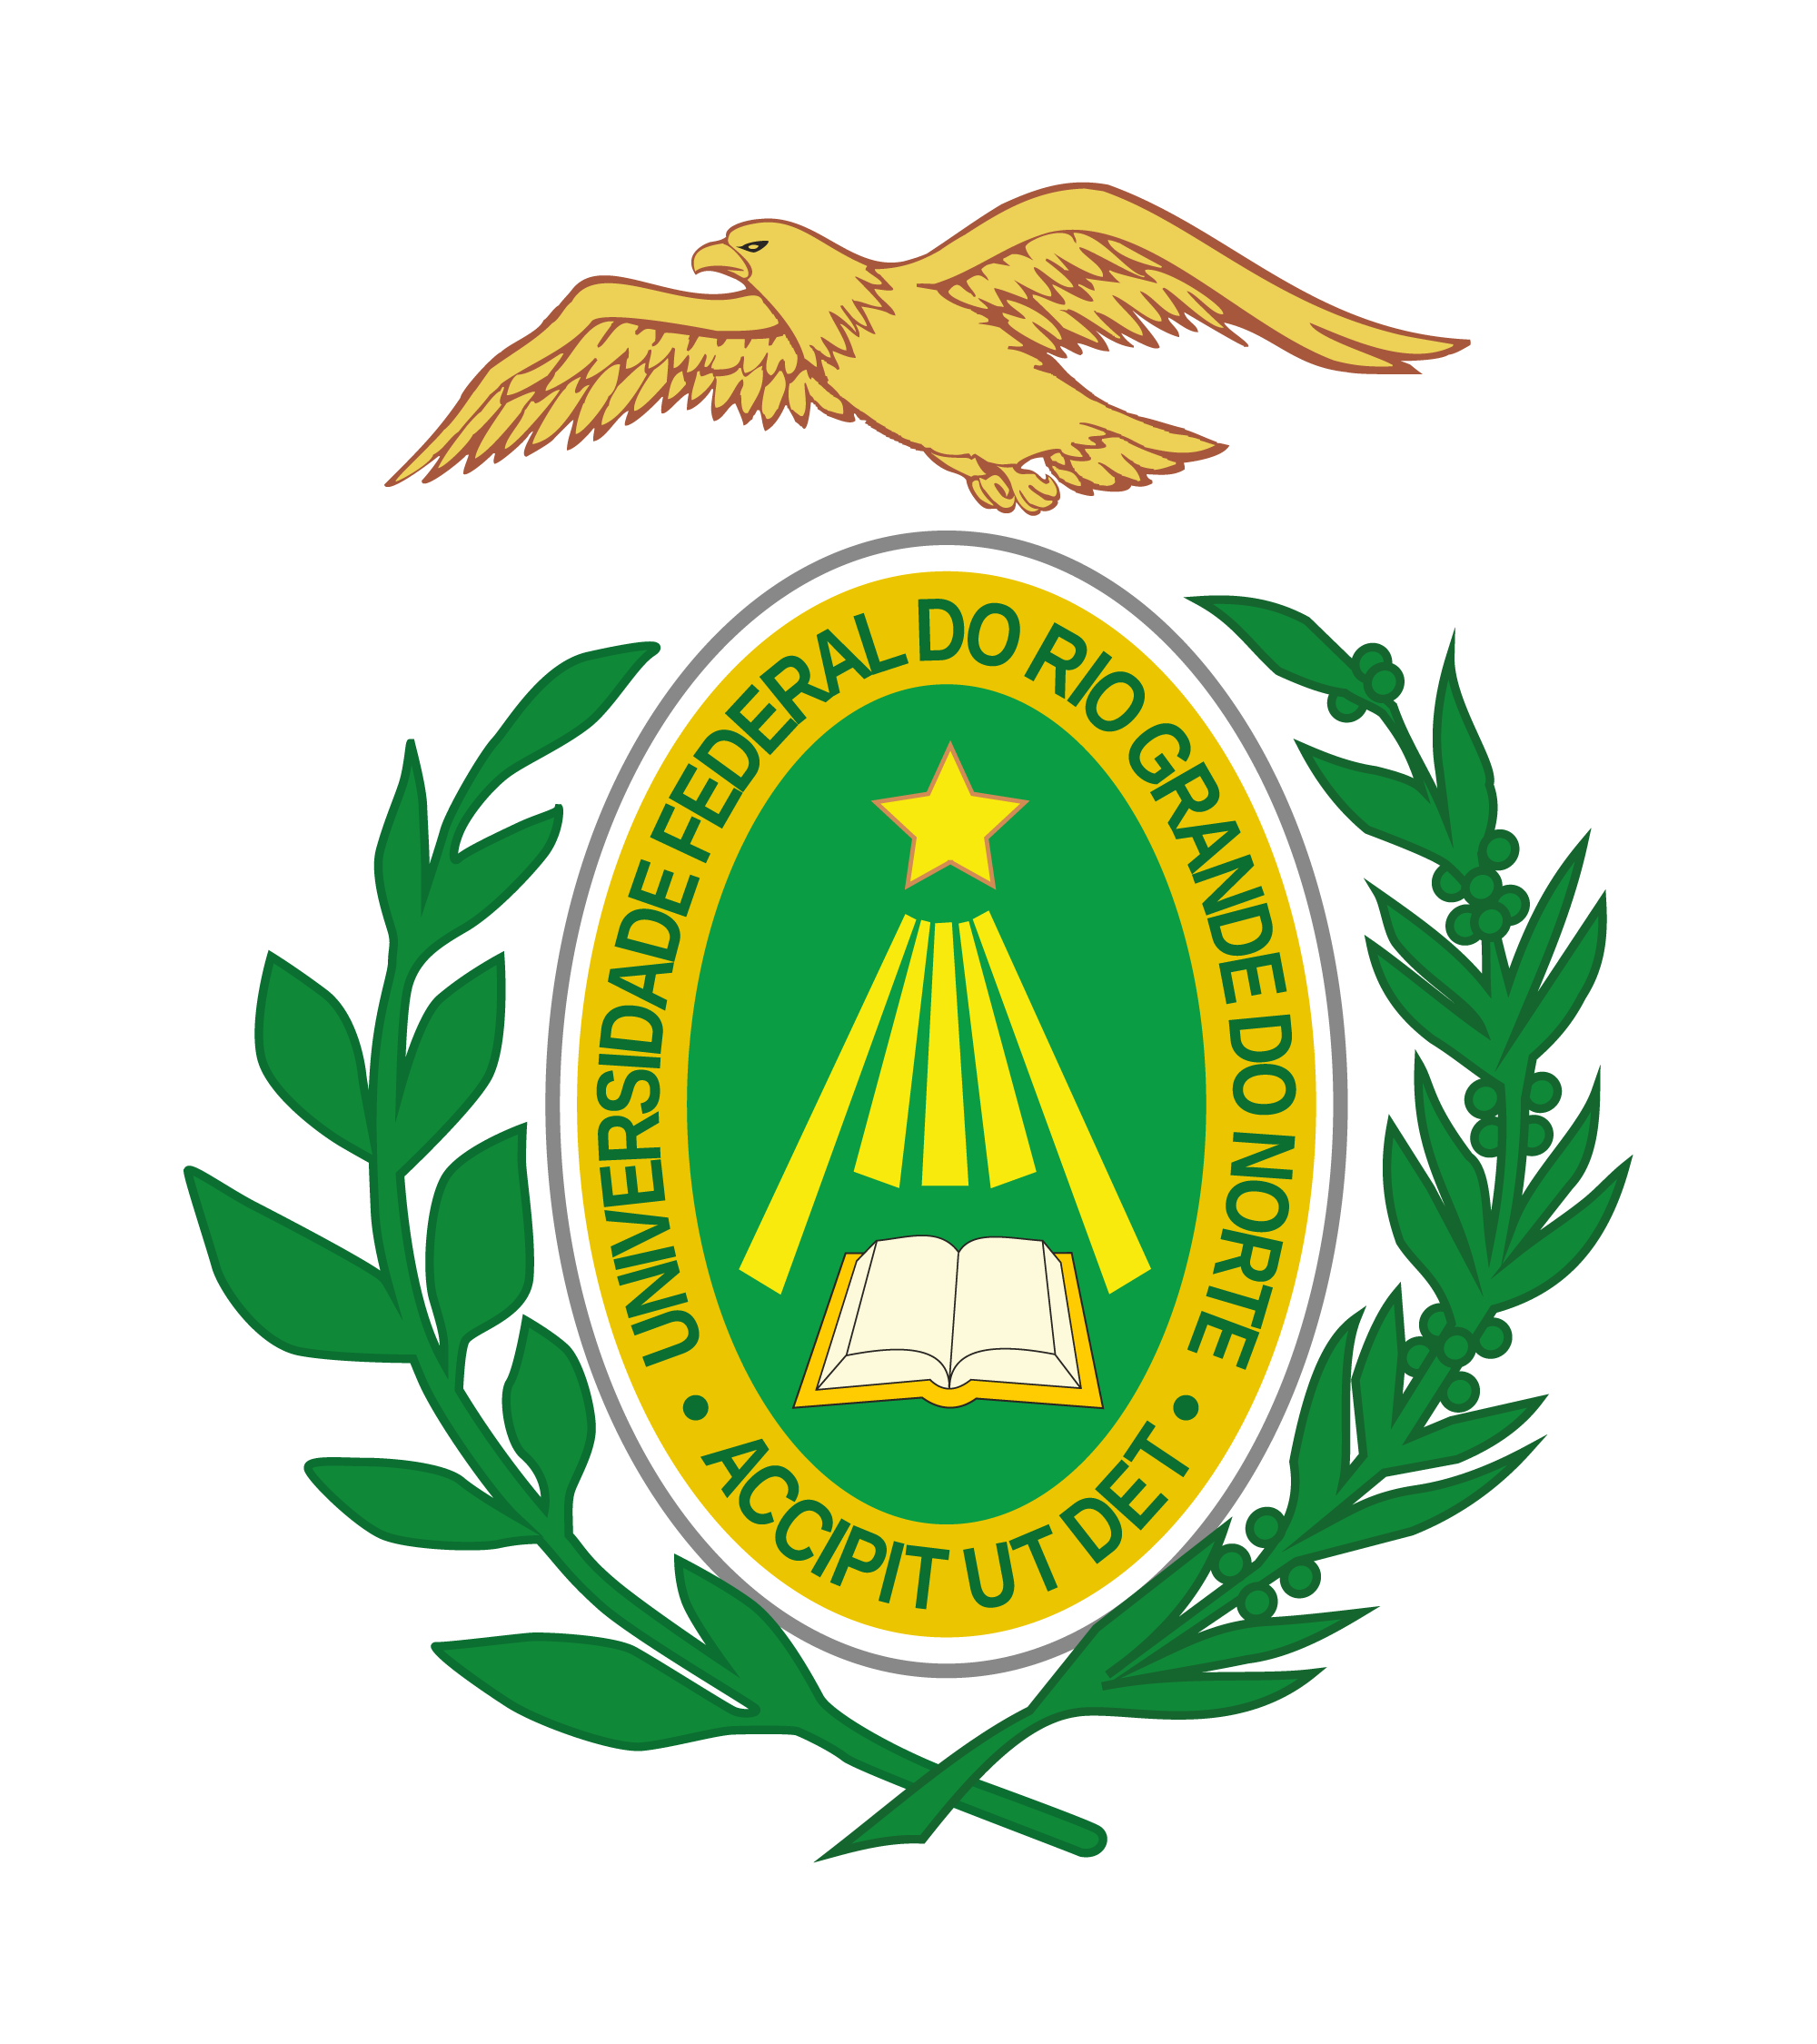 Federal University of Rio Grande do Norte